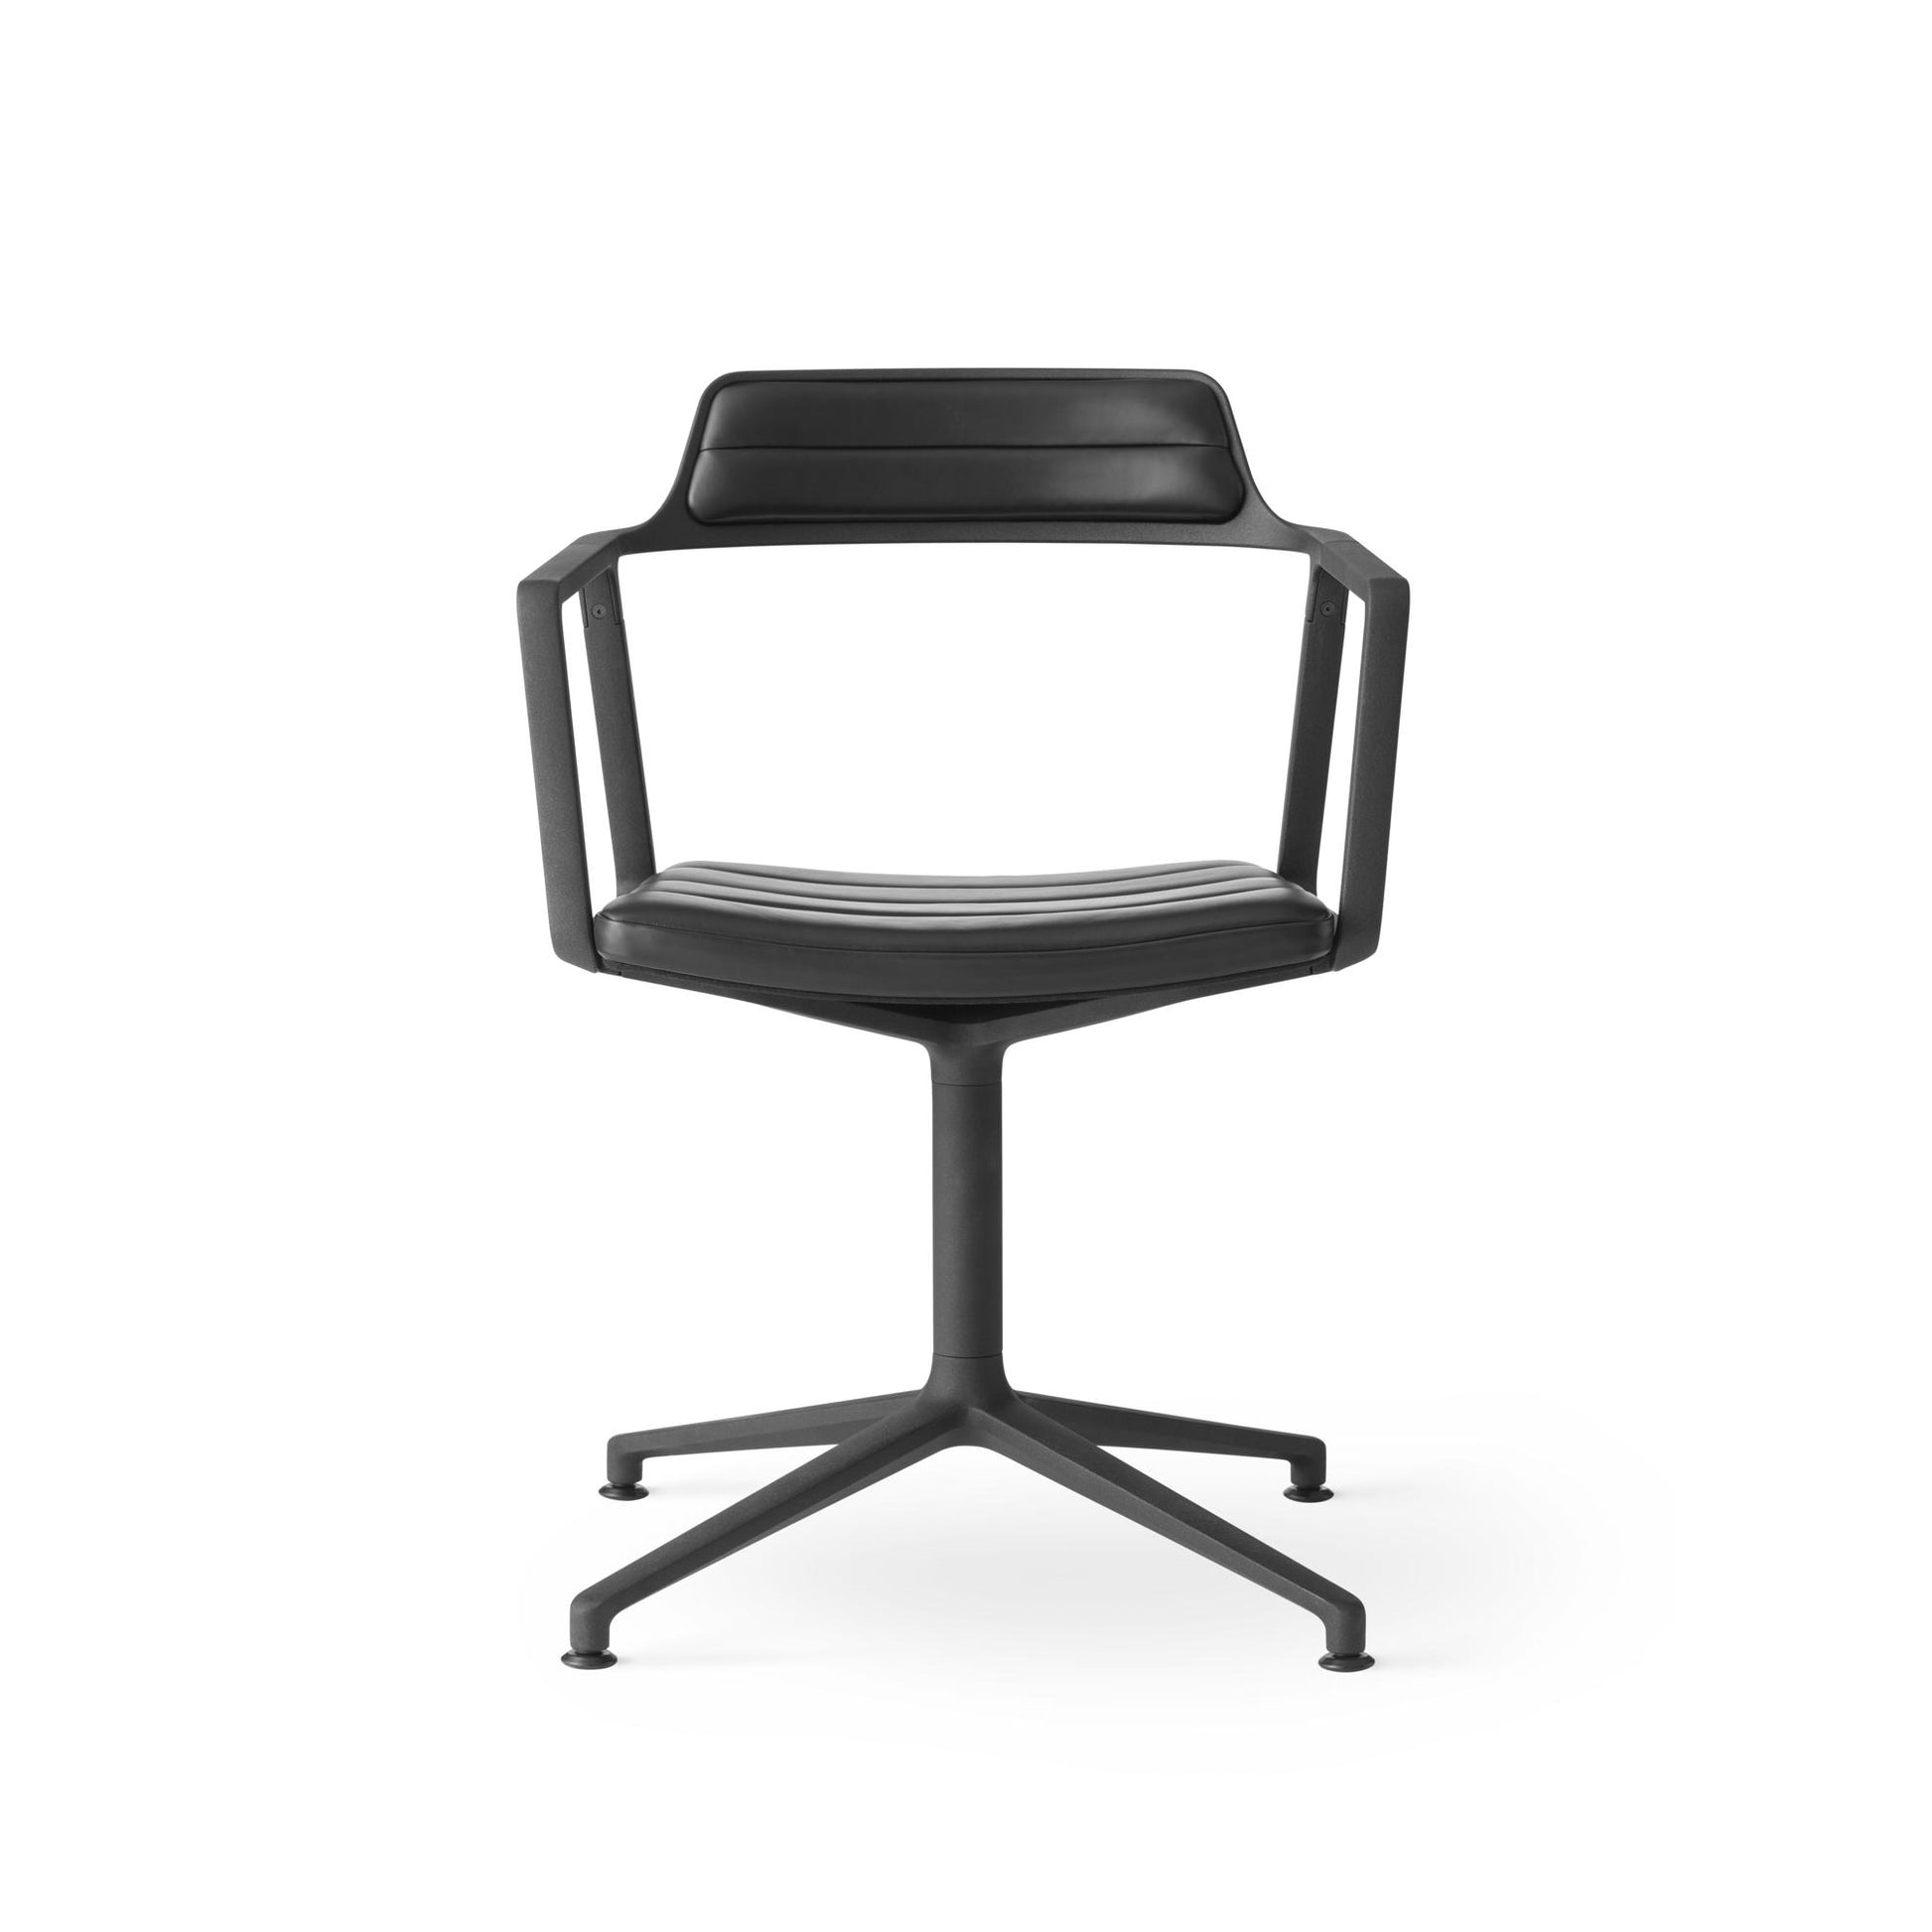 452 Swivel Chair by VIPP #Black / Black / With floor sliders